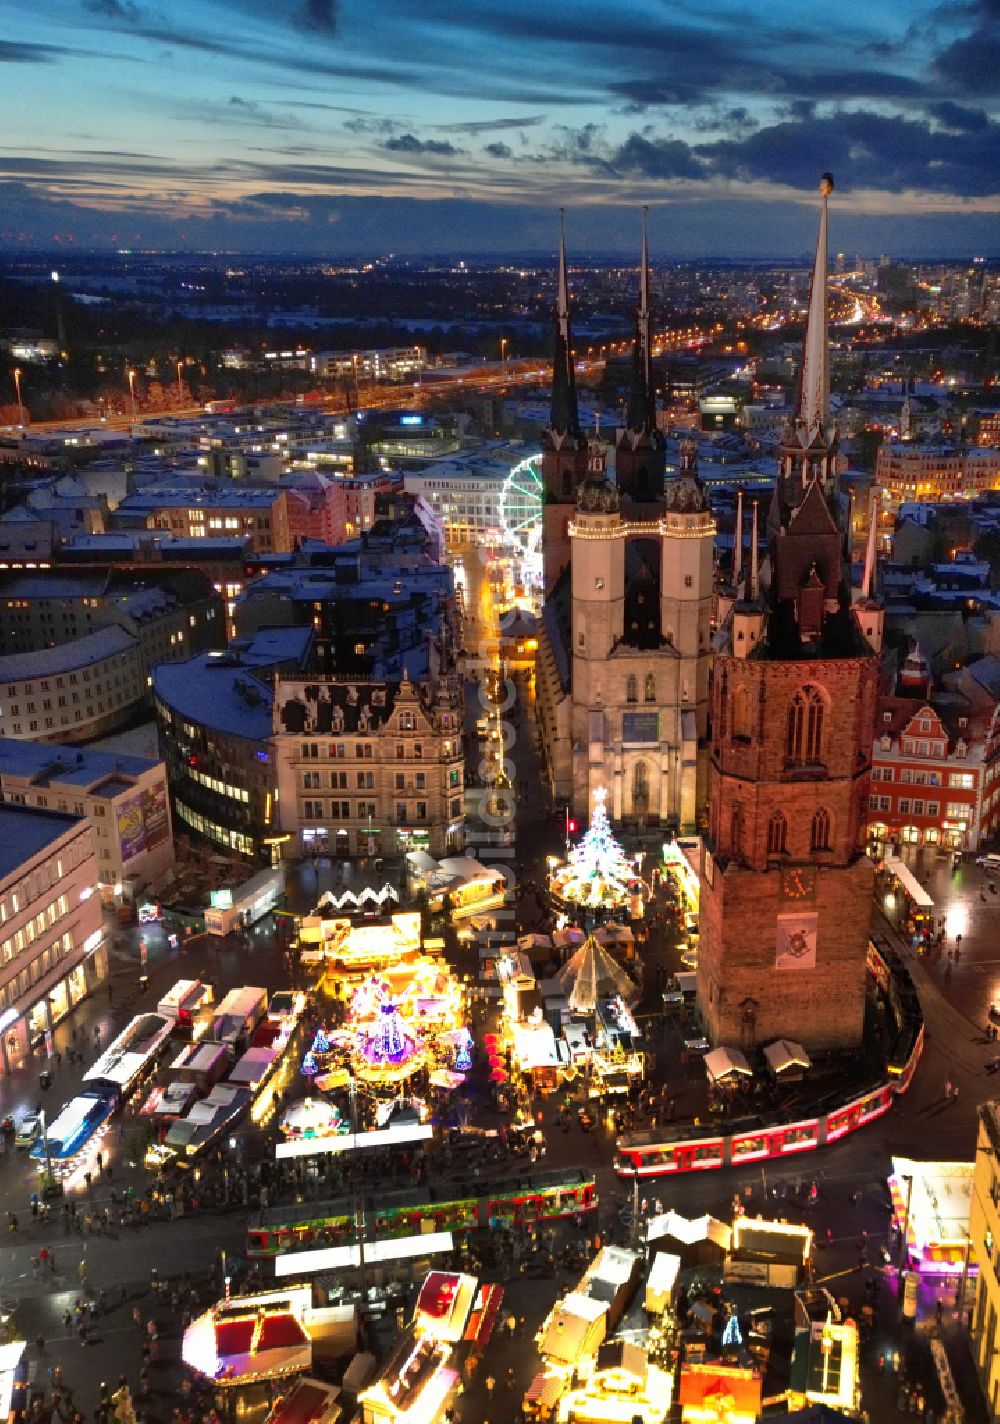 Halle (Saale) bei Nacht von oben - Nachtluftbild Weihnachtsmarkt- Veranstaltungsgelände und Verkaufs- Hütten und Buden in Halle (Saale) im Bundesland Sachsen-Anhalt, Deutschland